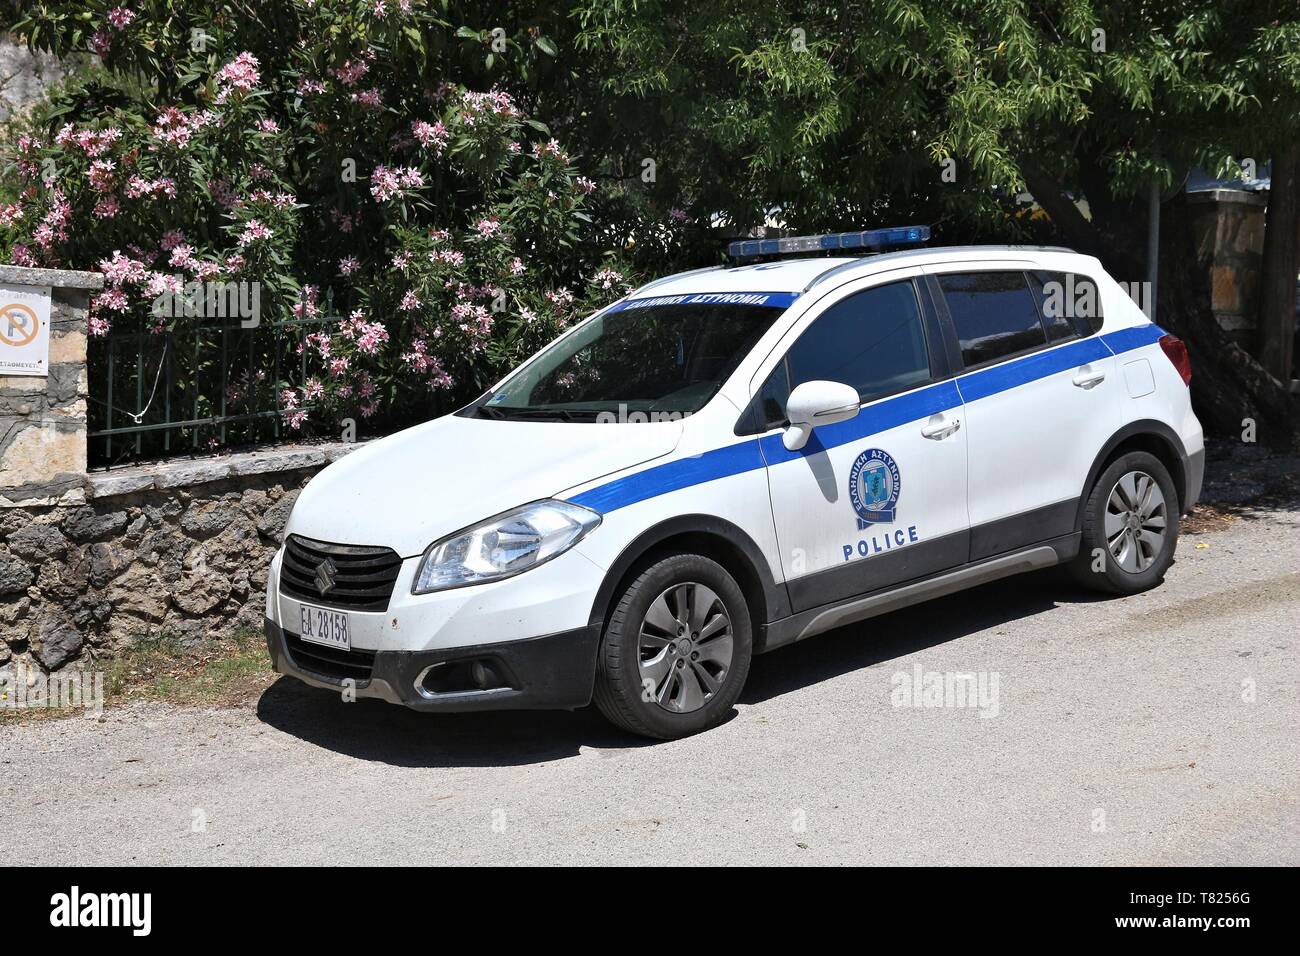 Corfou, Grèce - juin 2, 2016 : Suzuki SX4 crossover voiture de police garée dans l'île de Corfou, Grèce. Avec 566 véhicules immatriculés en Grèce par 1000 habitants Banque D'Images